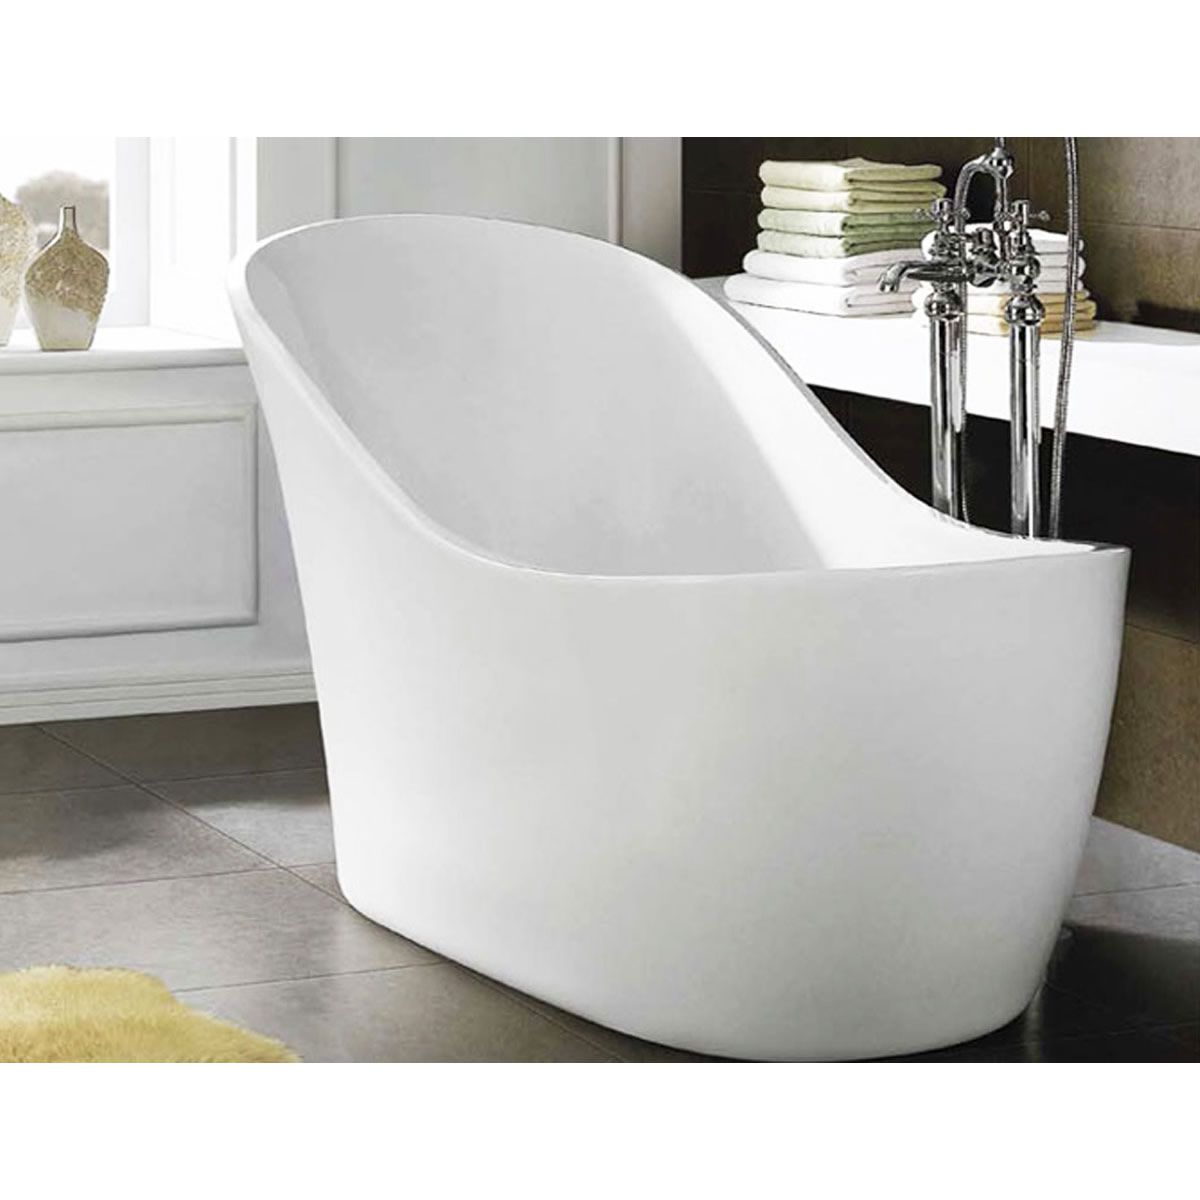 Лучшие стальные ванные. Сидячая ванна 100х70. Высокая сидячая ванна. Ванна маленькая сидячая. Ванна сидячая акриловая.